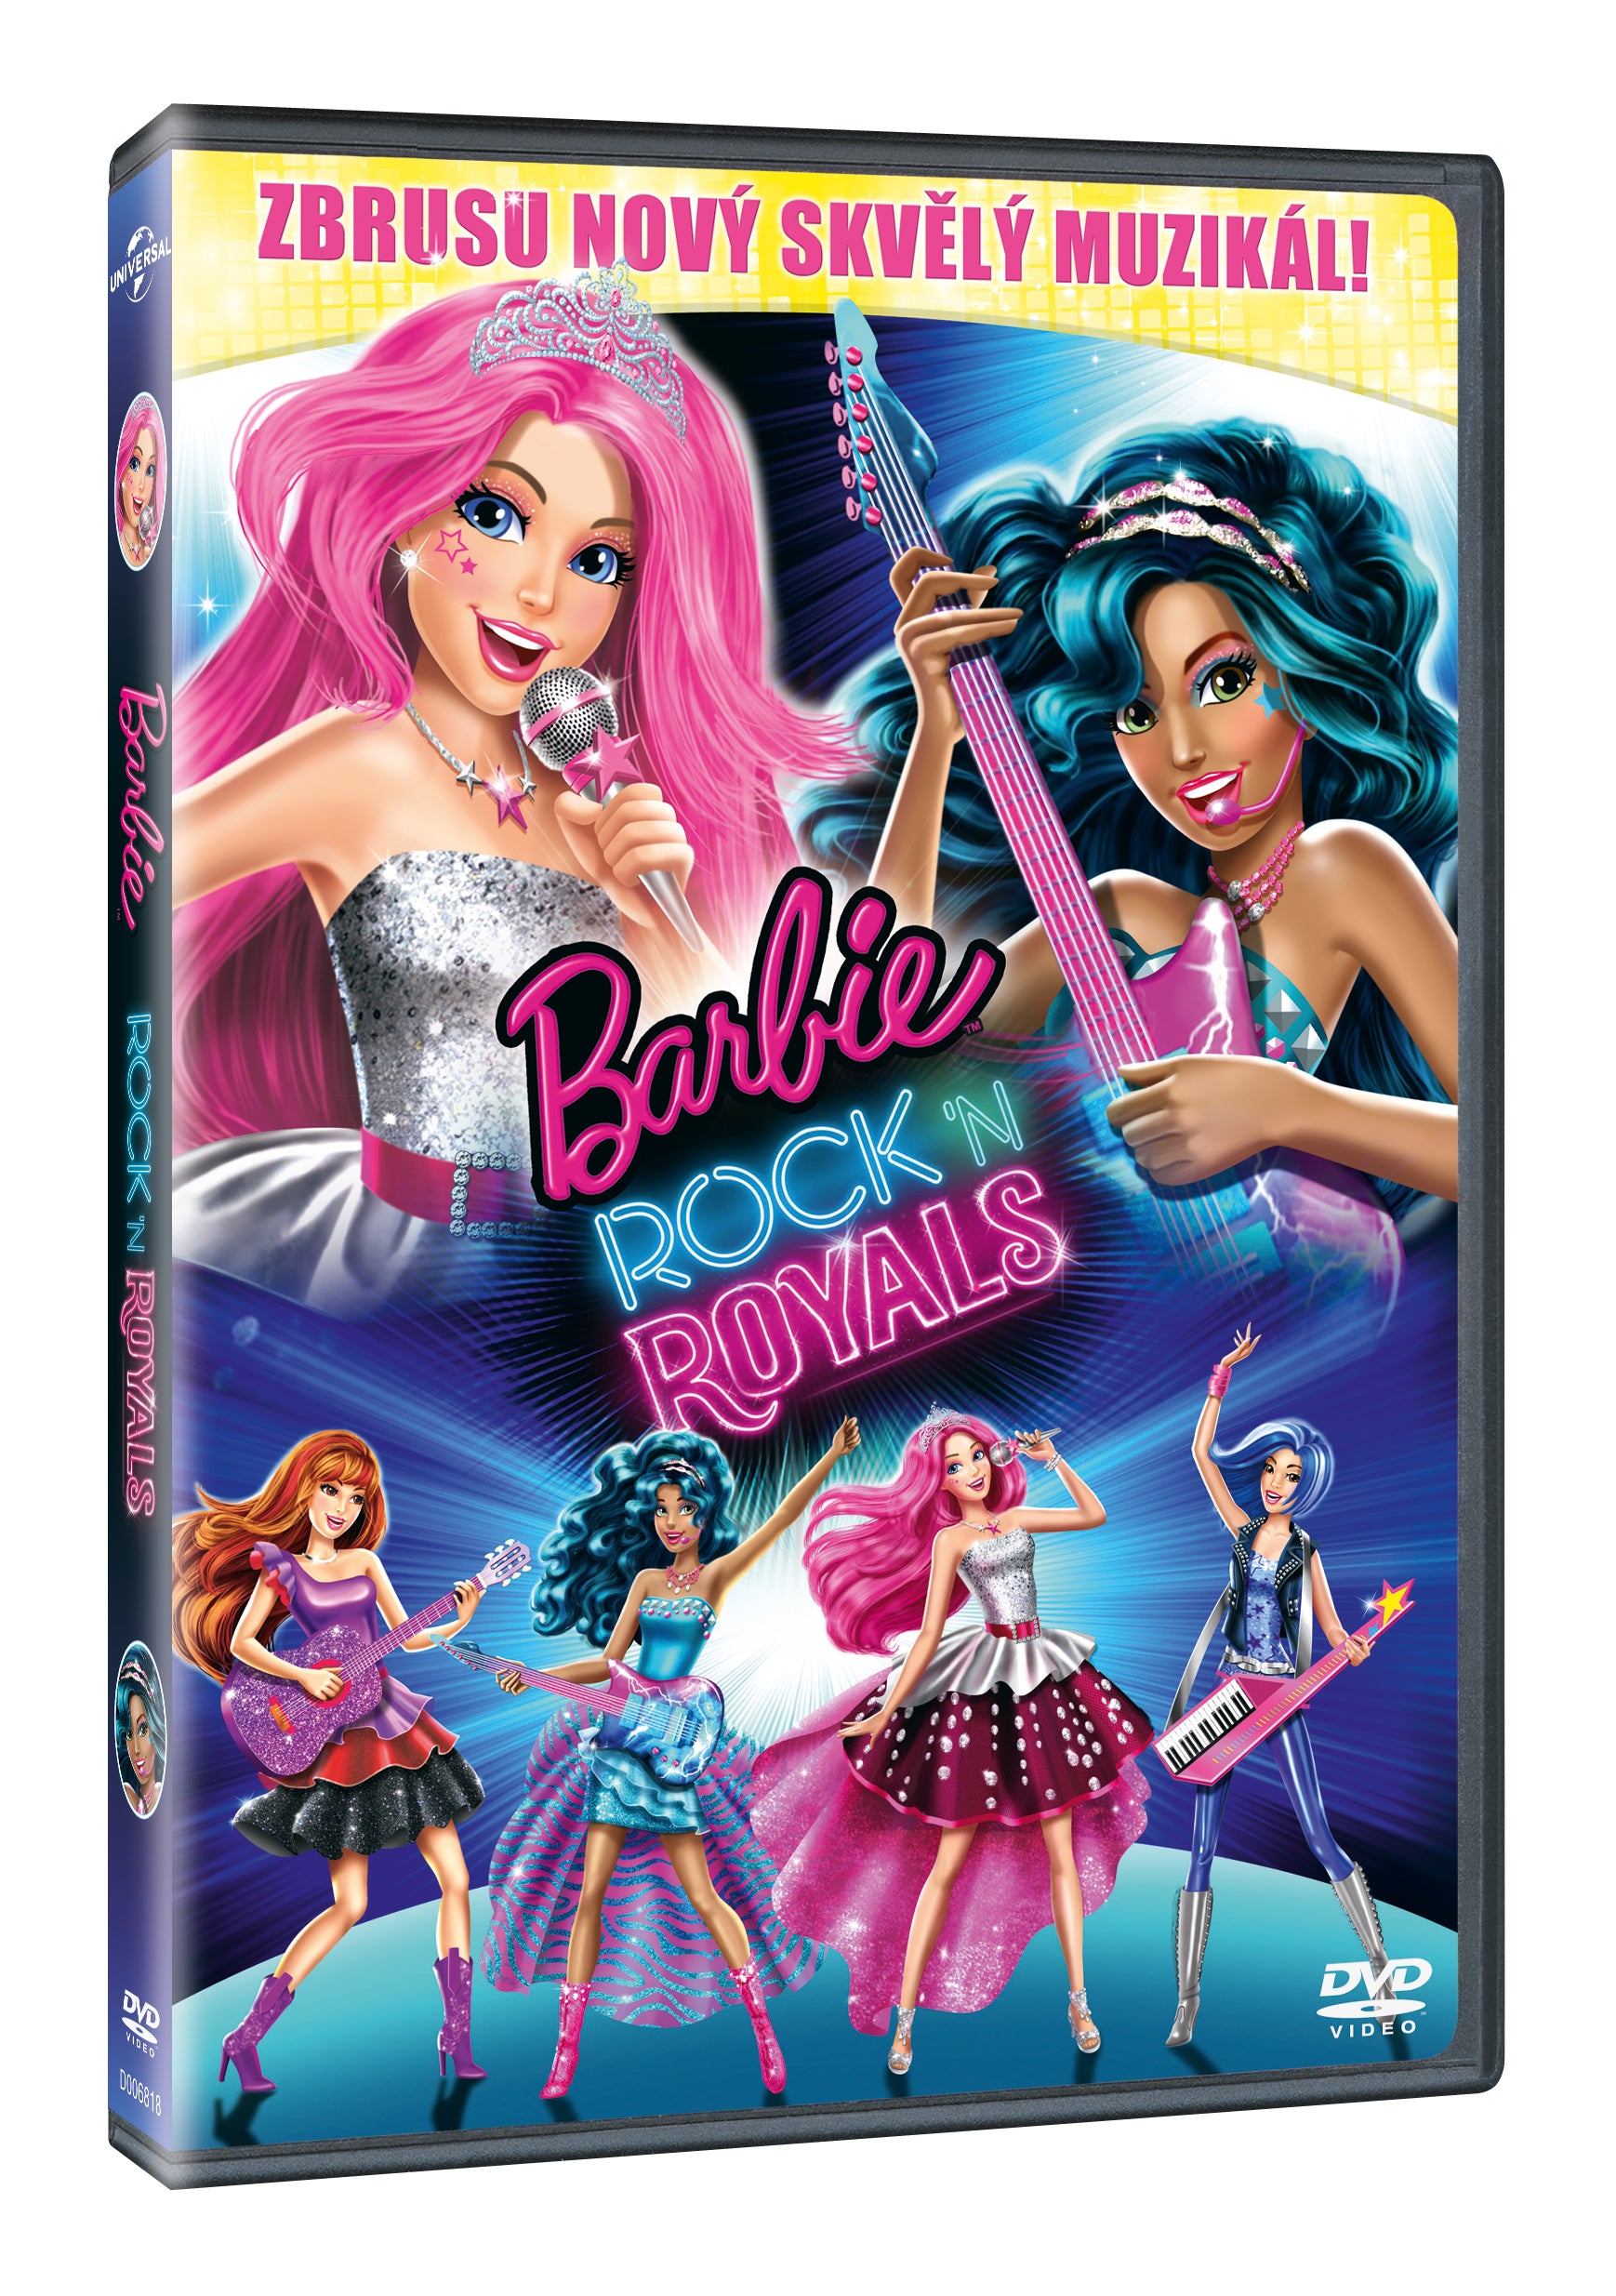 Barbie Rock’n Royals DVD / Barbie in Rock 'n Royals